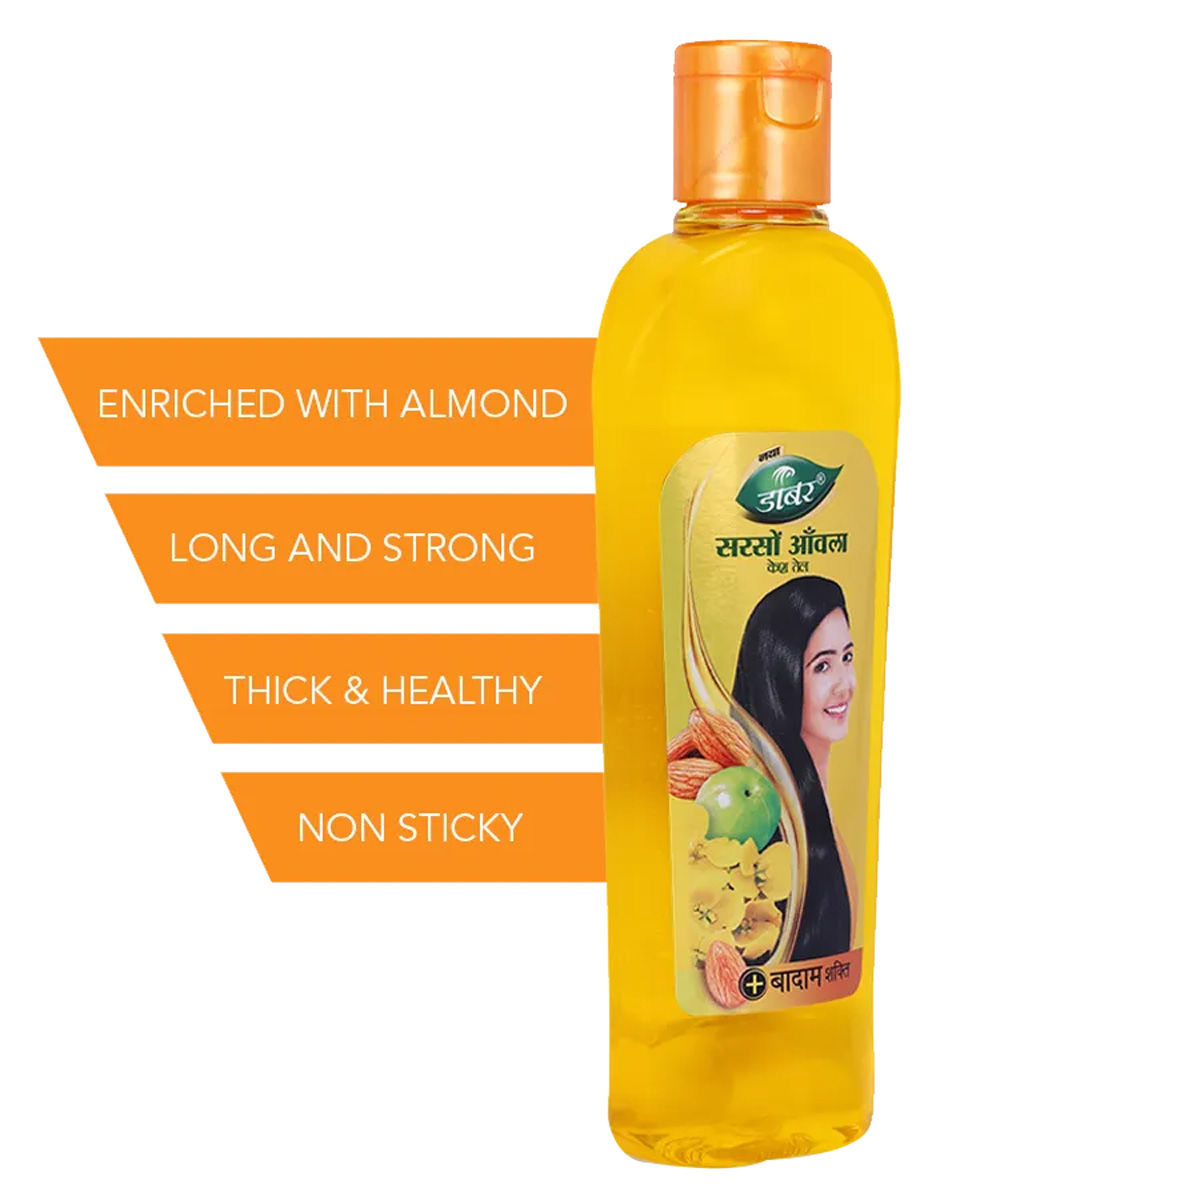 Dabur Sarson Amla Hair Oil, 80 ml, Pack of 1 